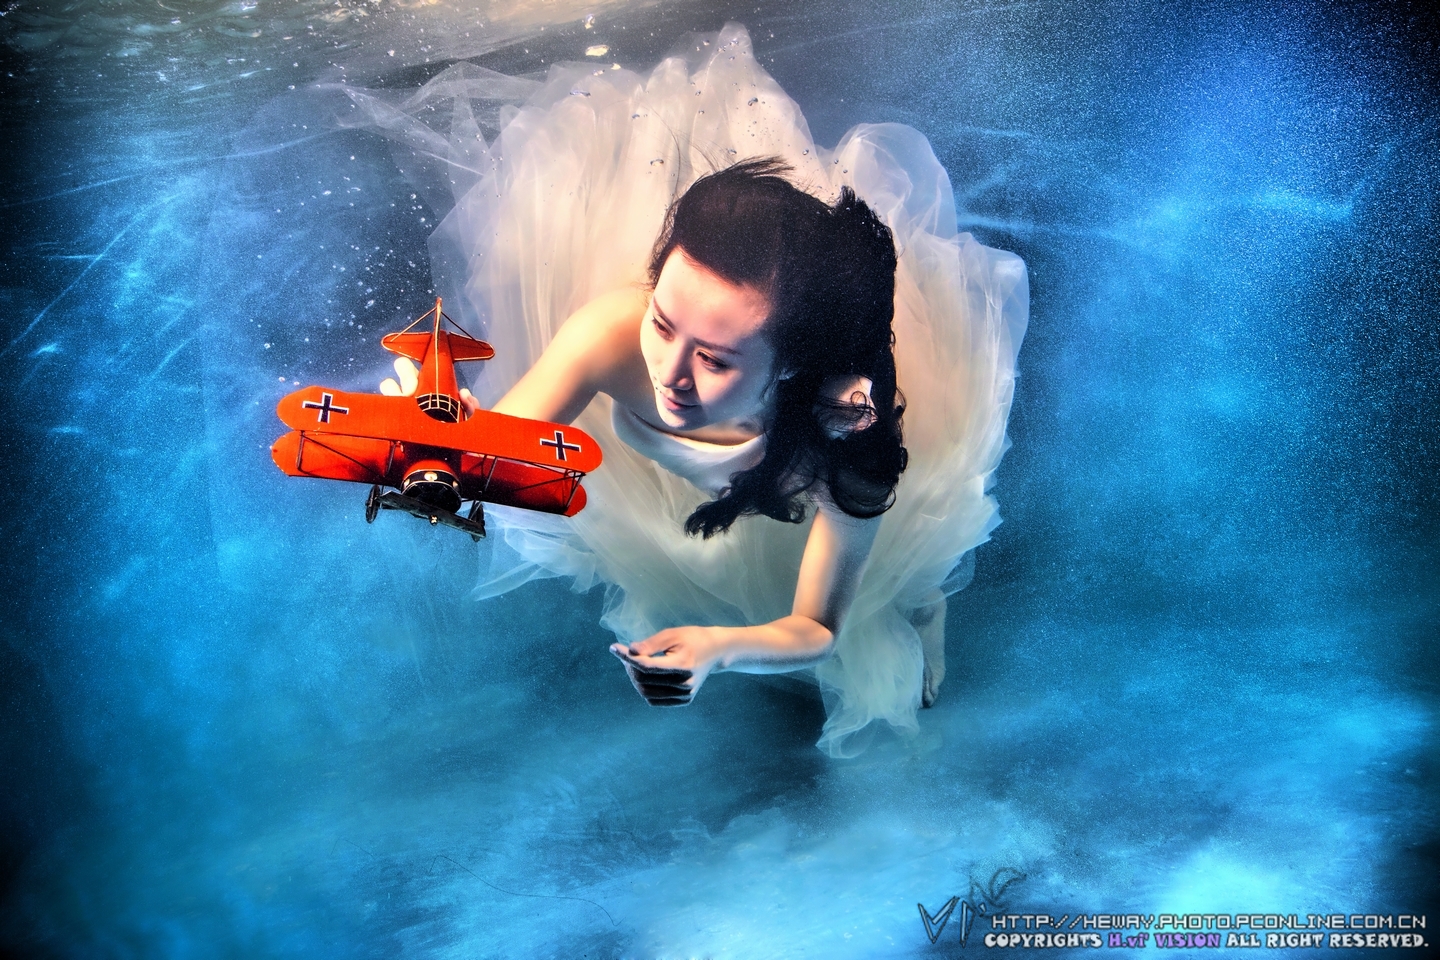 潜水的女人水下摄影 - 免费可商用图片 - CC0素材网